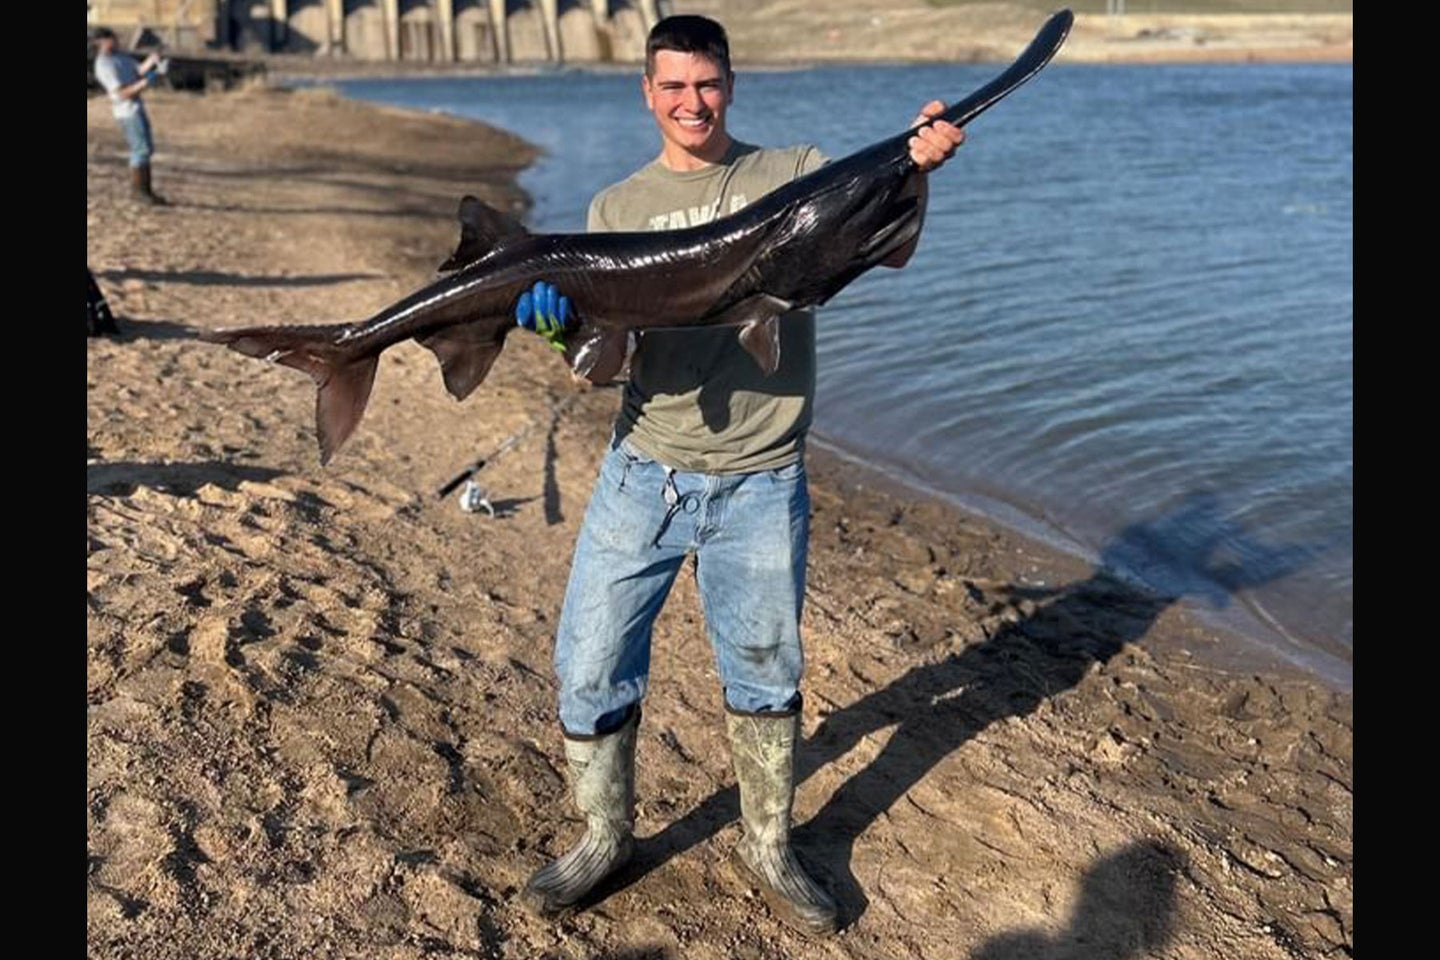 An Oklahoma angler poses with a rare black paddlefish.